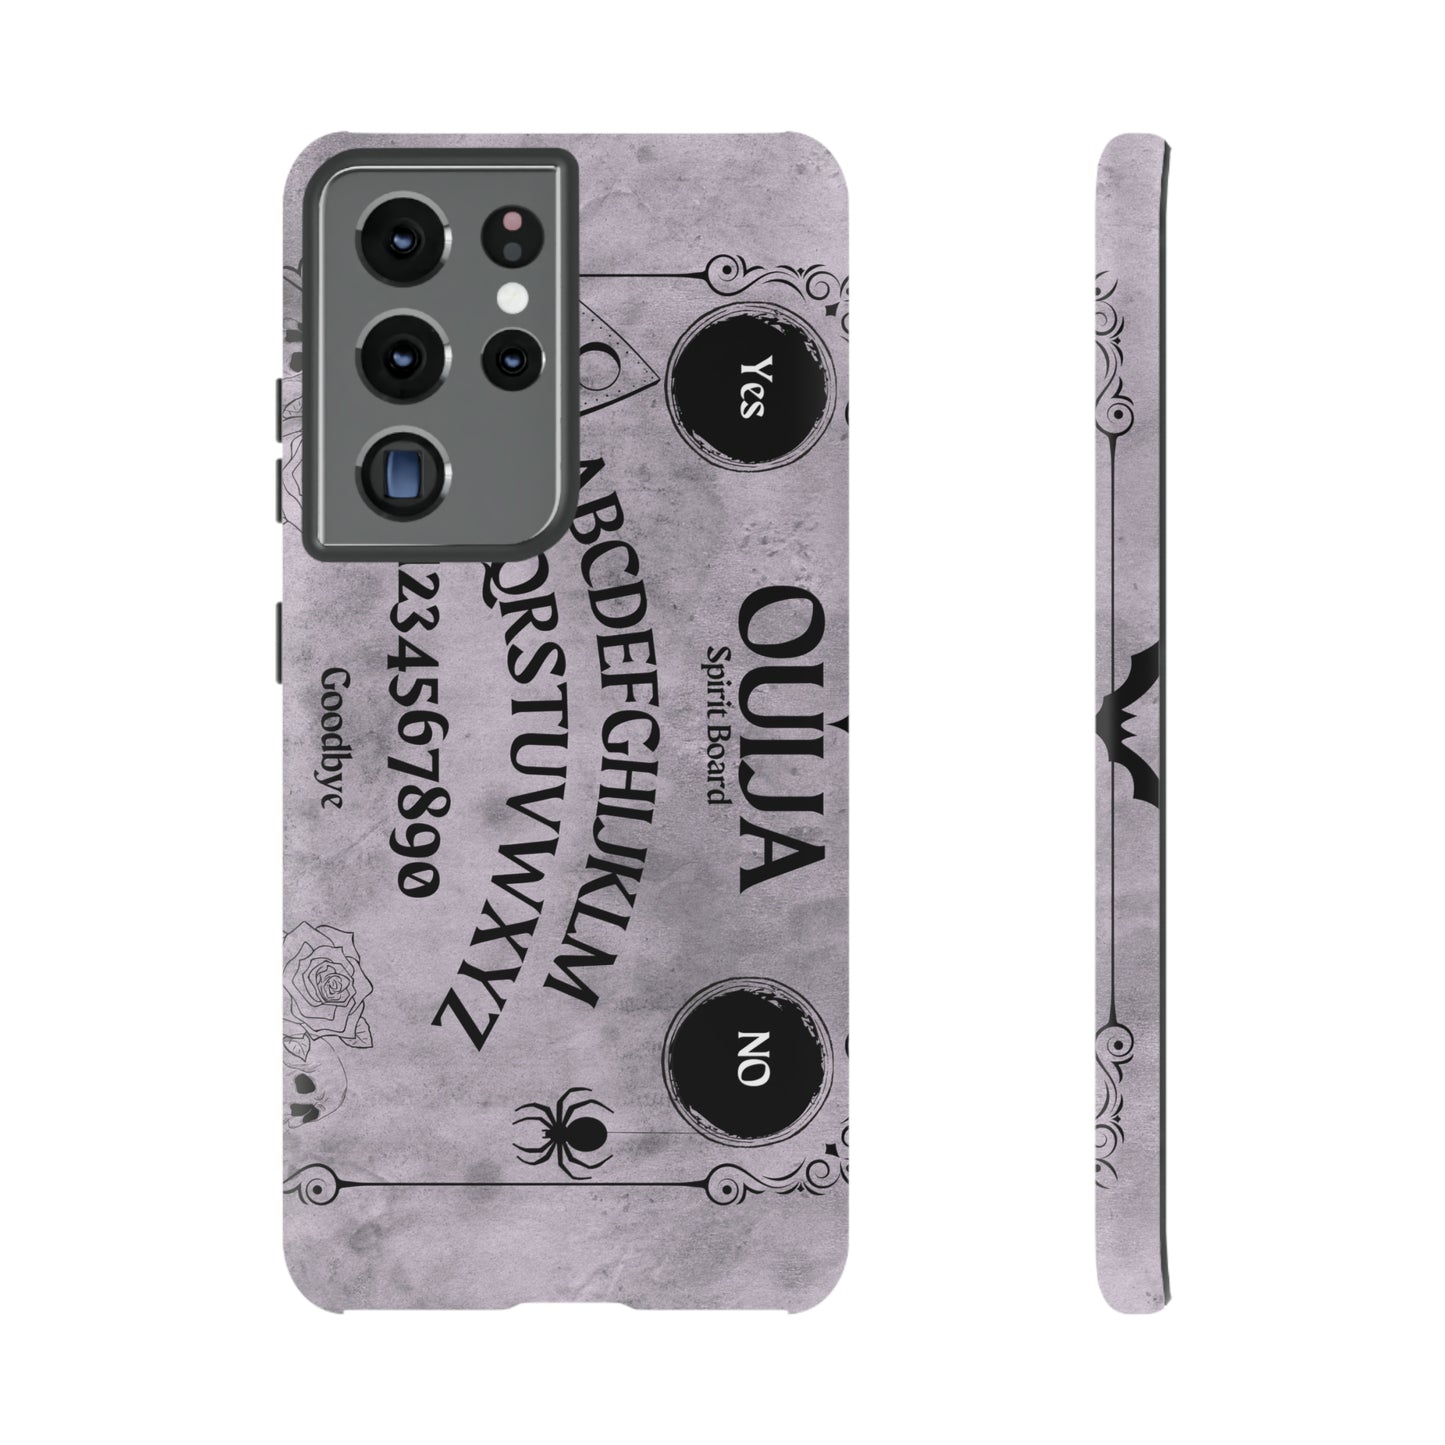 Ouija Board Tough Phone Cases For Samsung iPhone GooglePhone CaseVTZdesignsSamsung Galaxy S21 UltraMatteAccessoriesGlossyhalloween